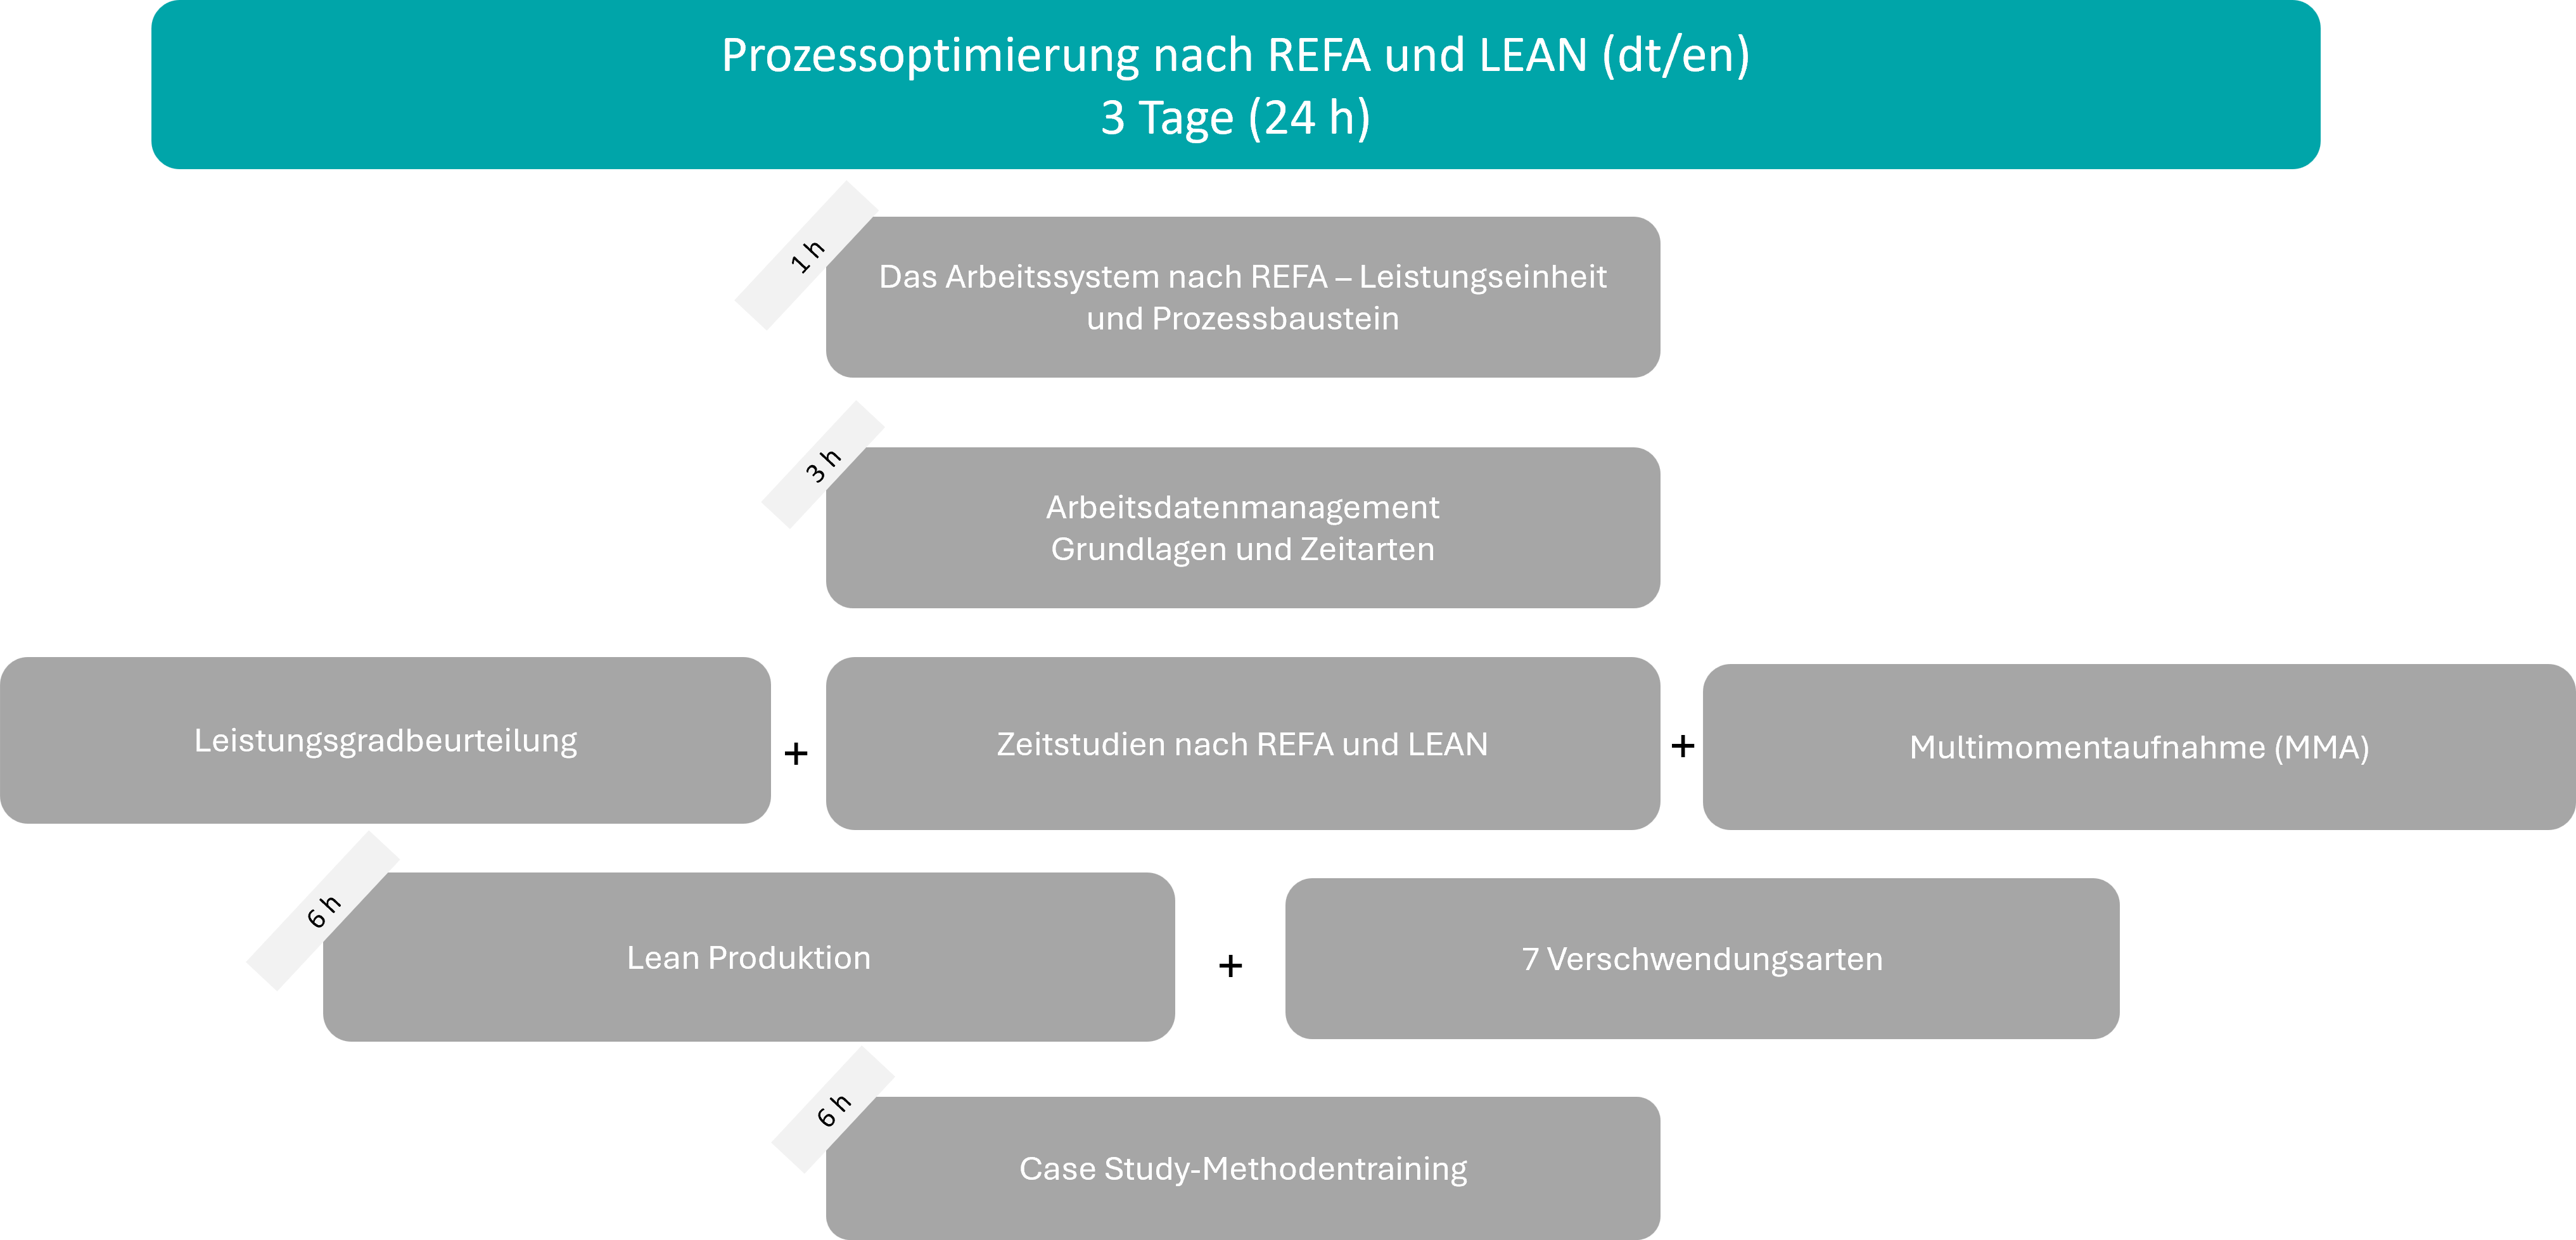 Prozessoptimierung nach REFA und LEAN